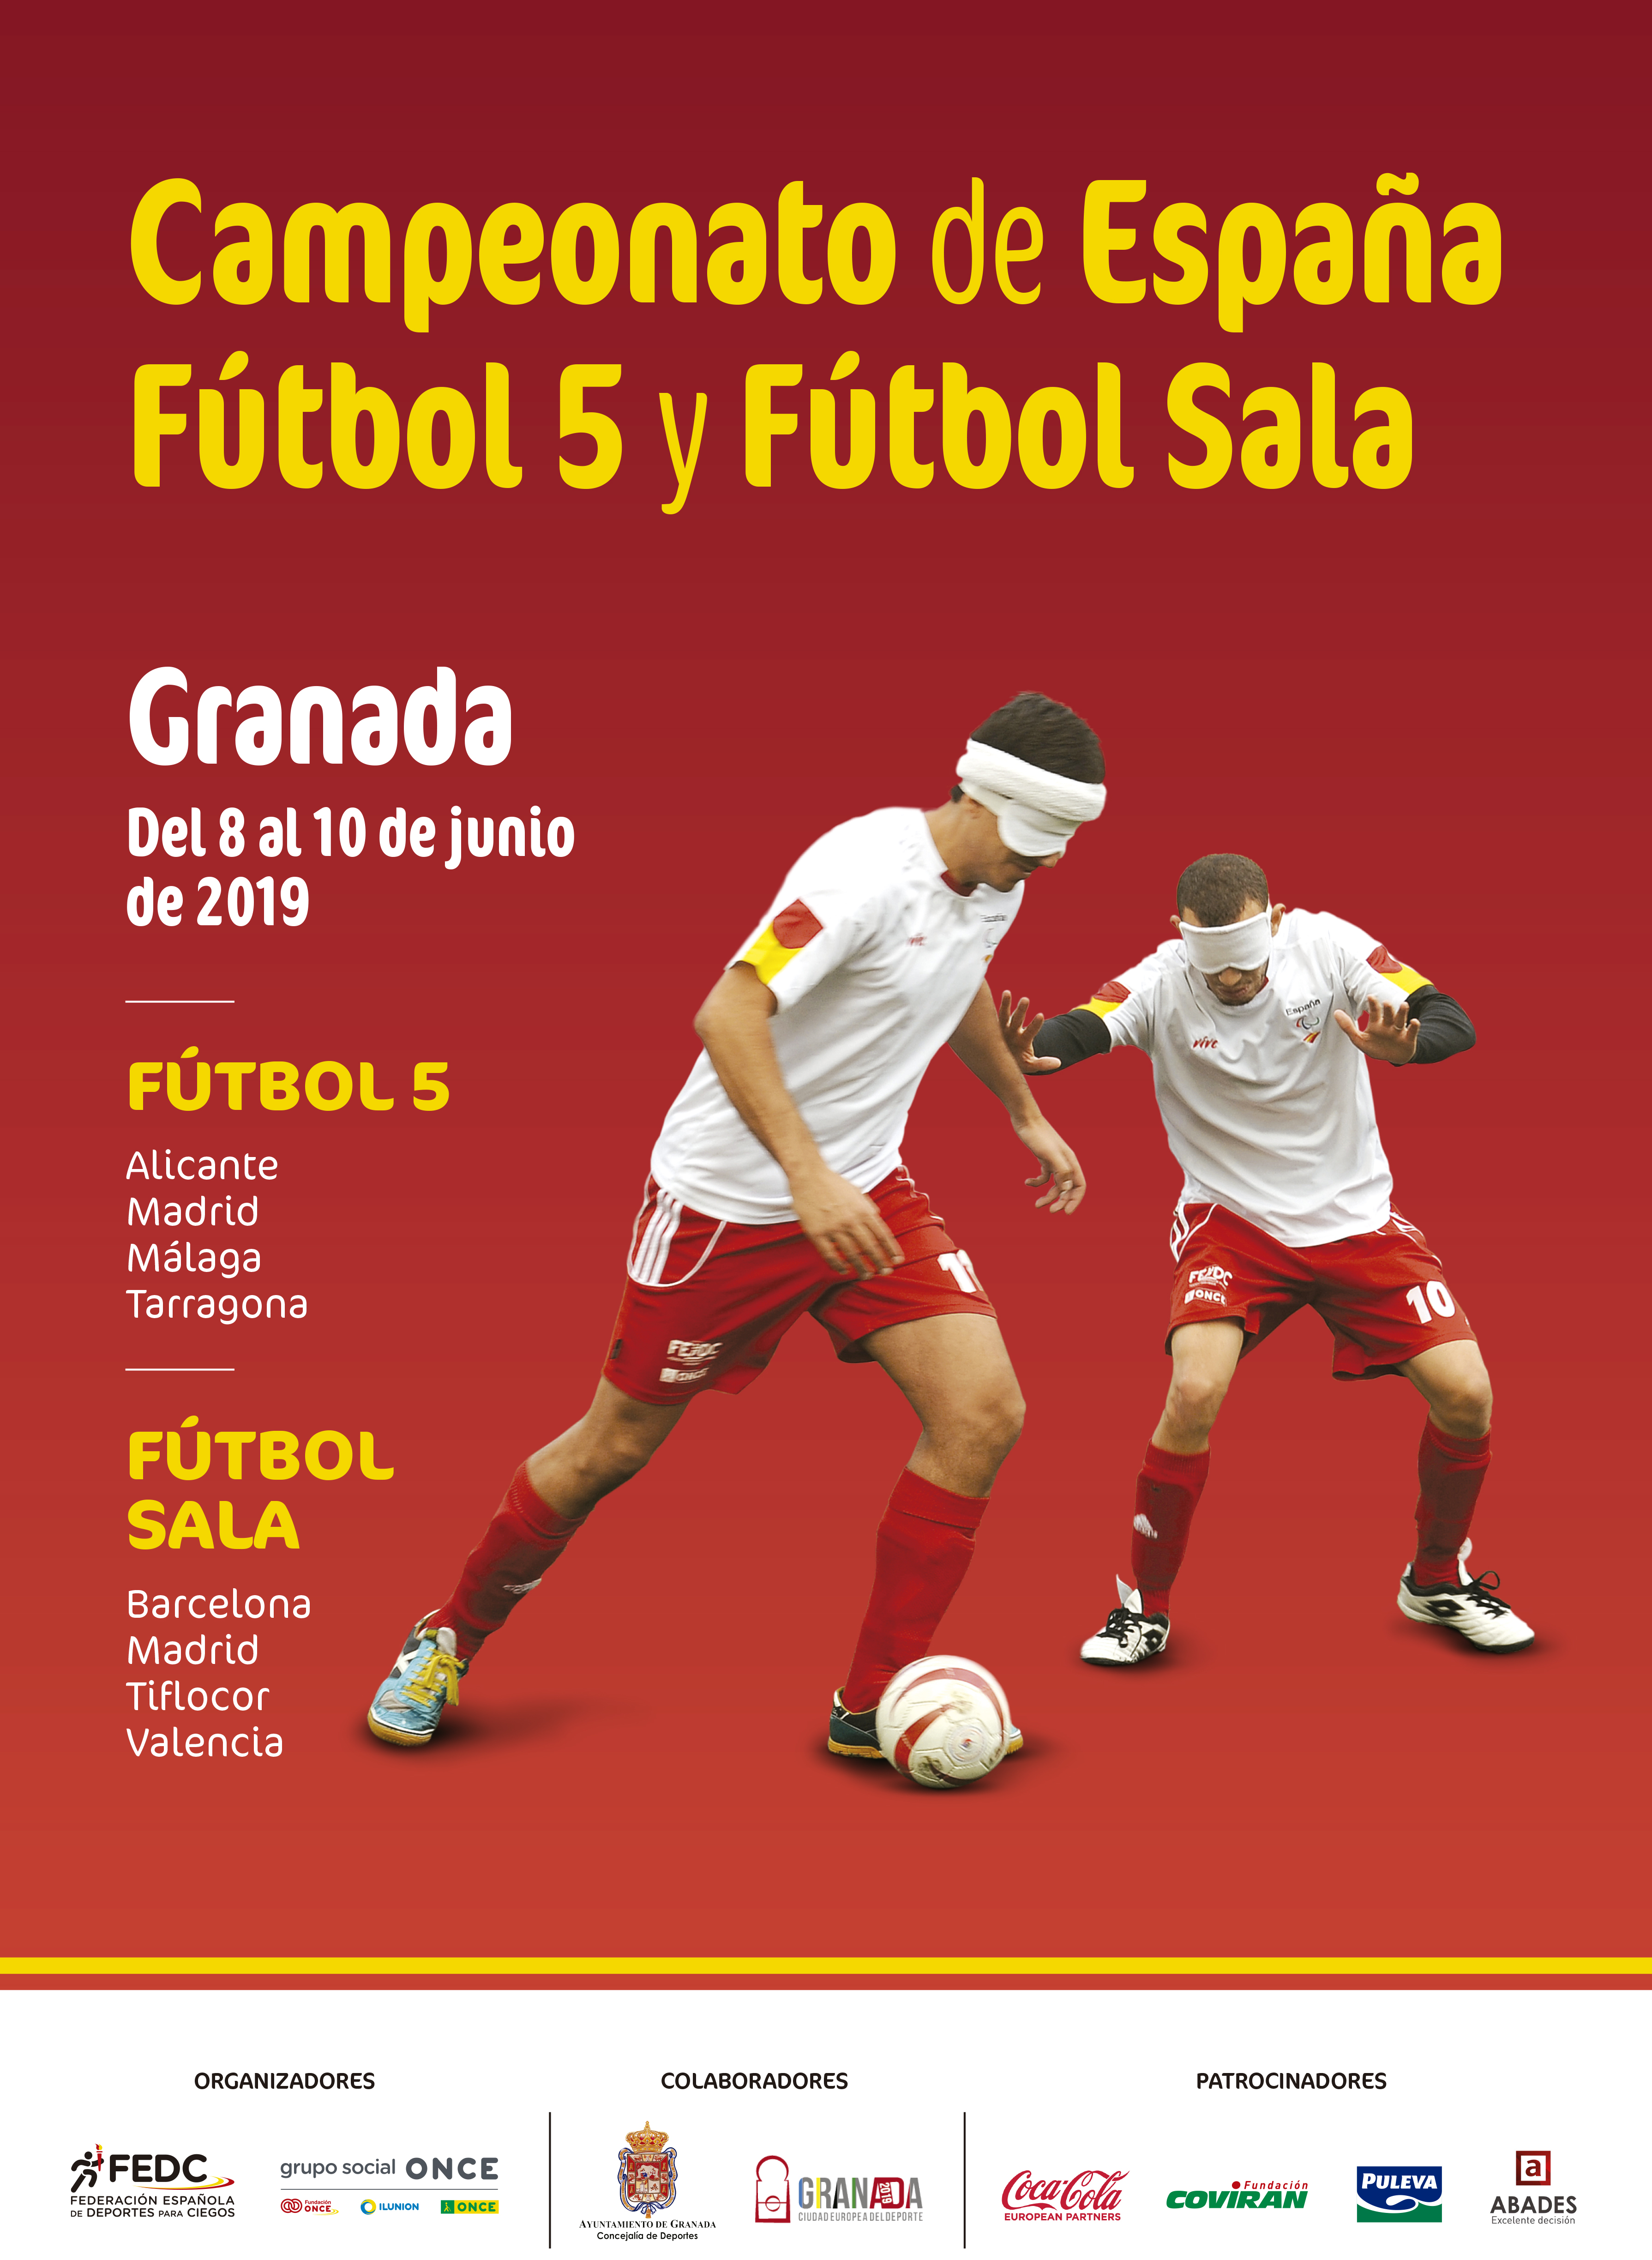 Cartel oficial del campeonato de Granada